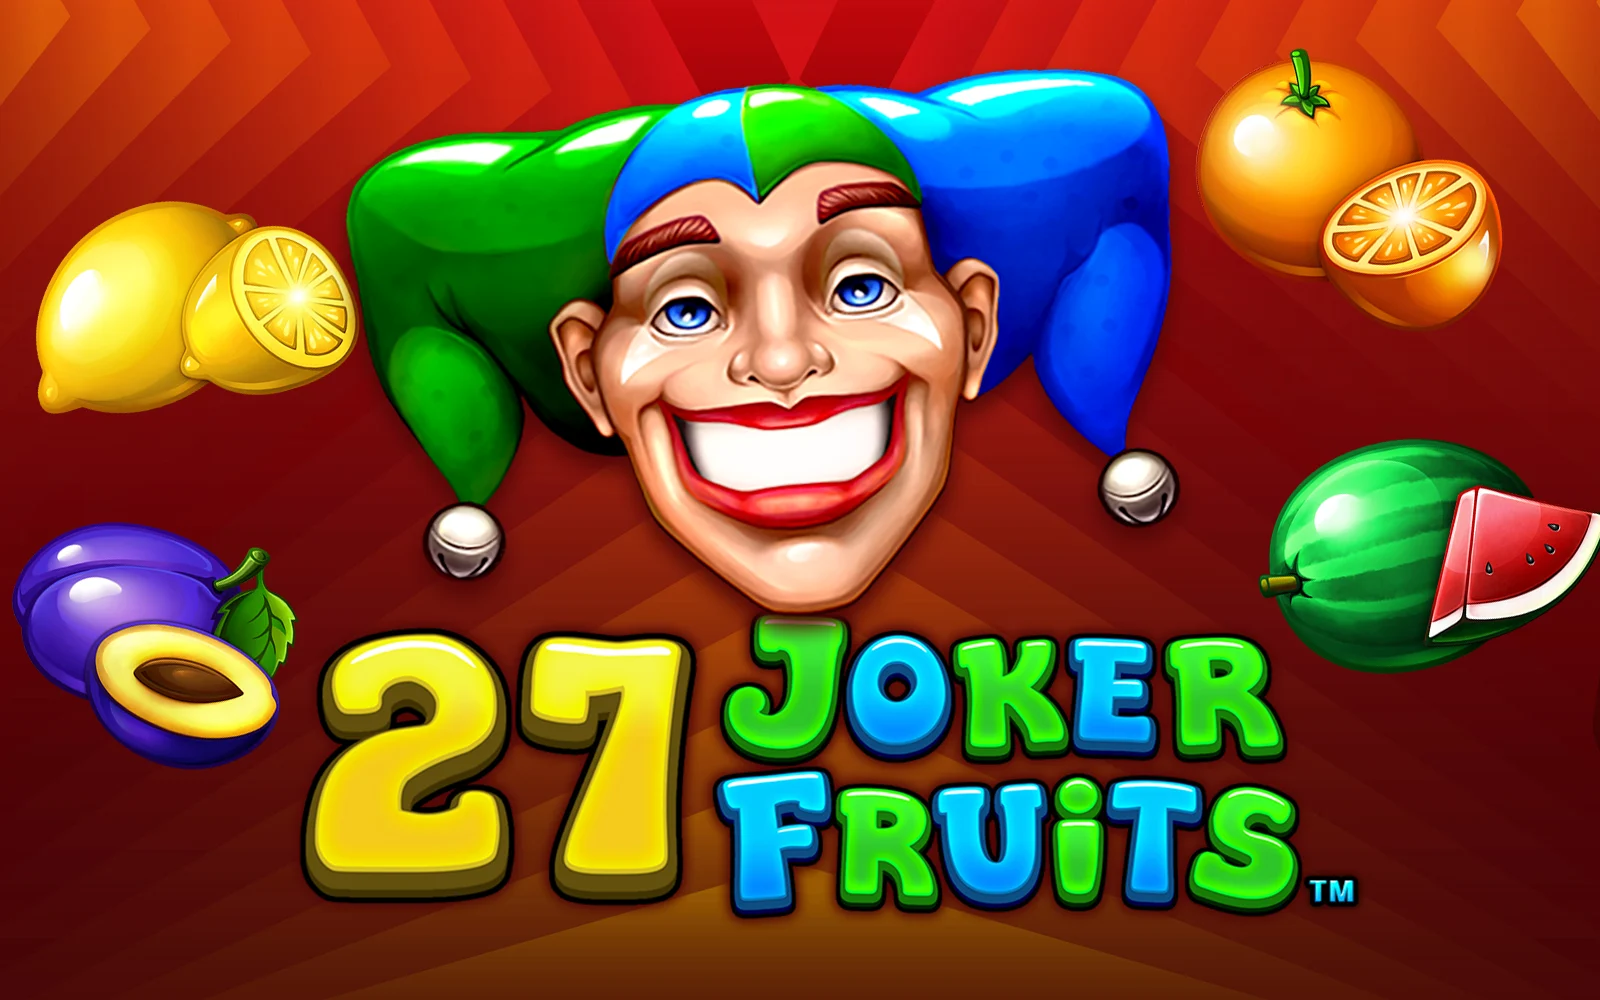 Starcasino.be online casino üzerinden 27 Joker Fruits oynayın